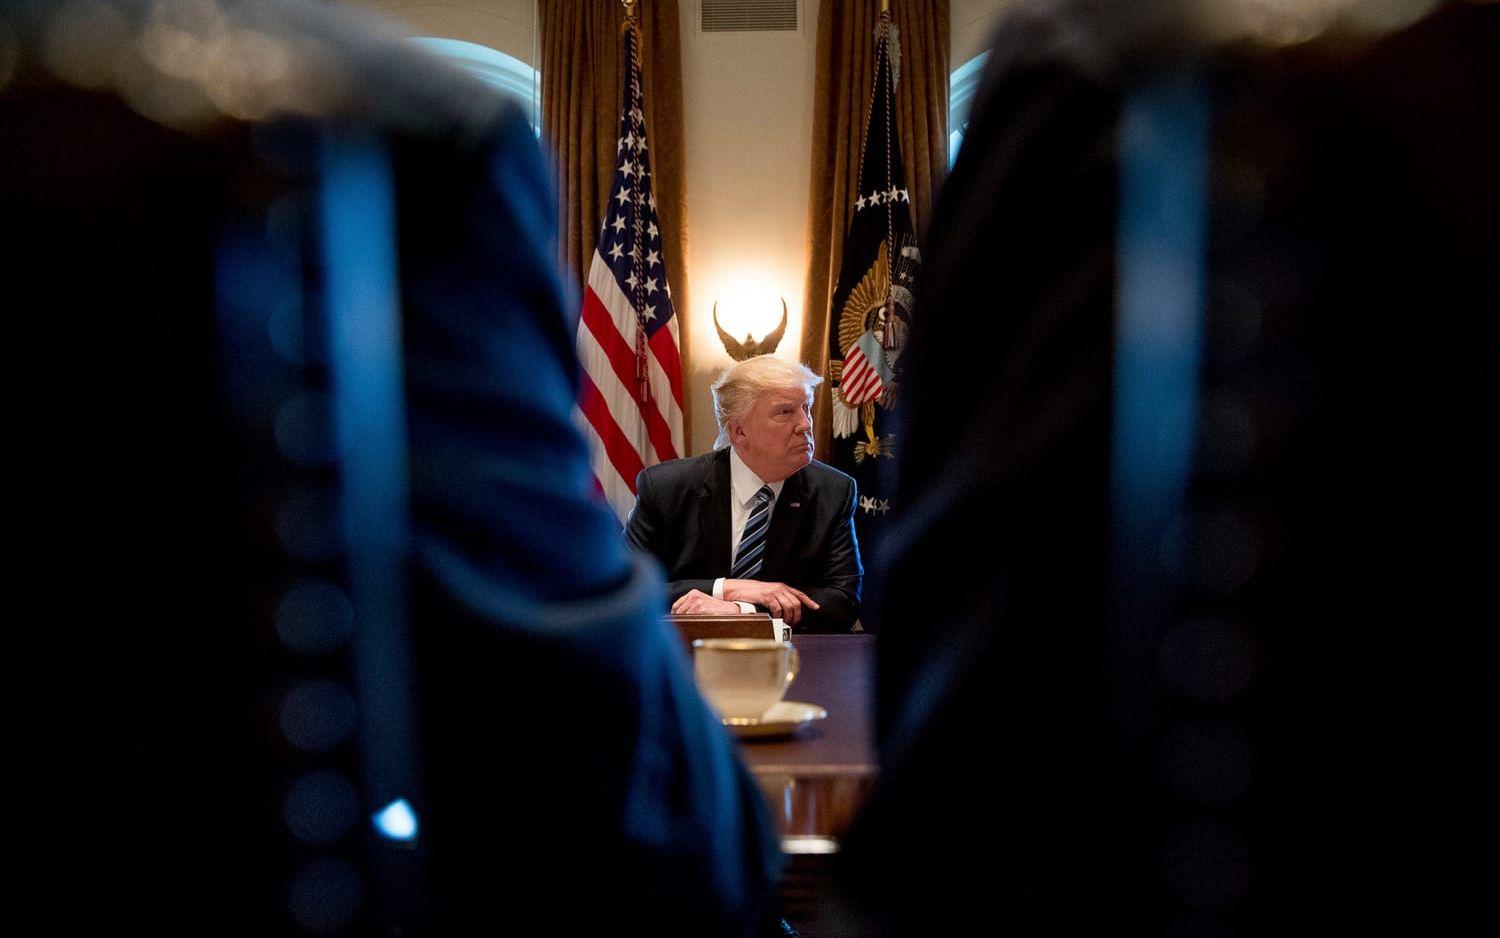 13 MARS: Trump håller kabinettmöte. Foto: TT